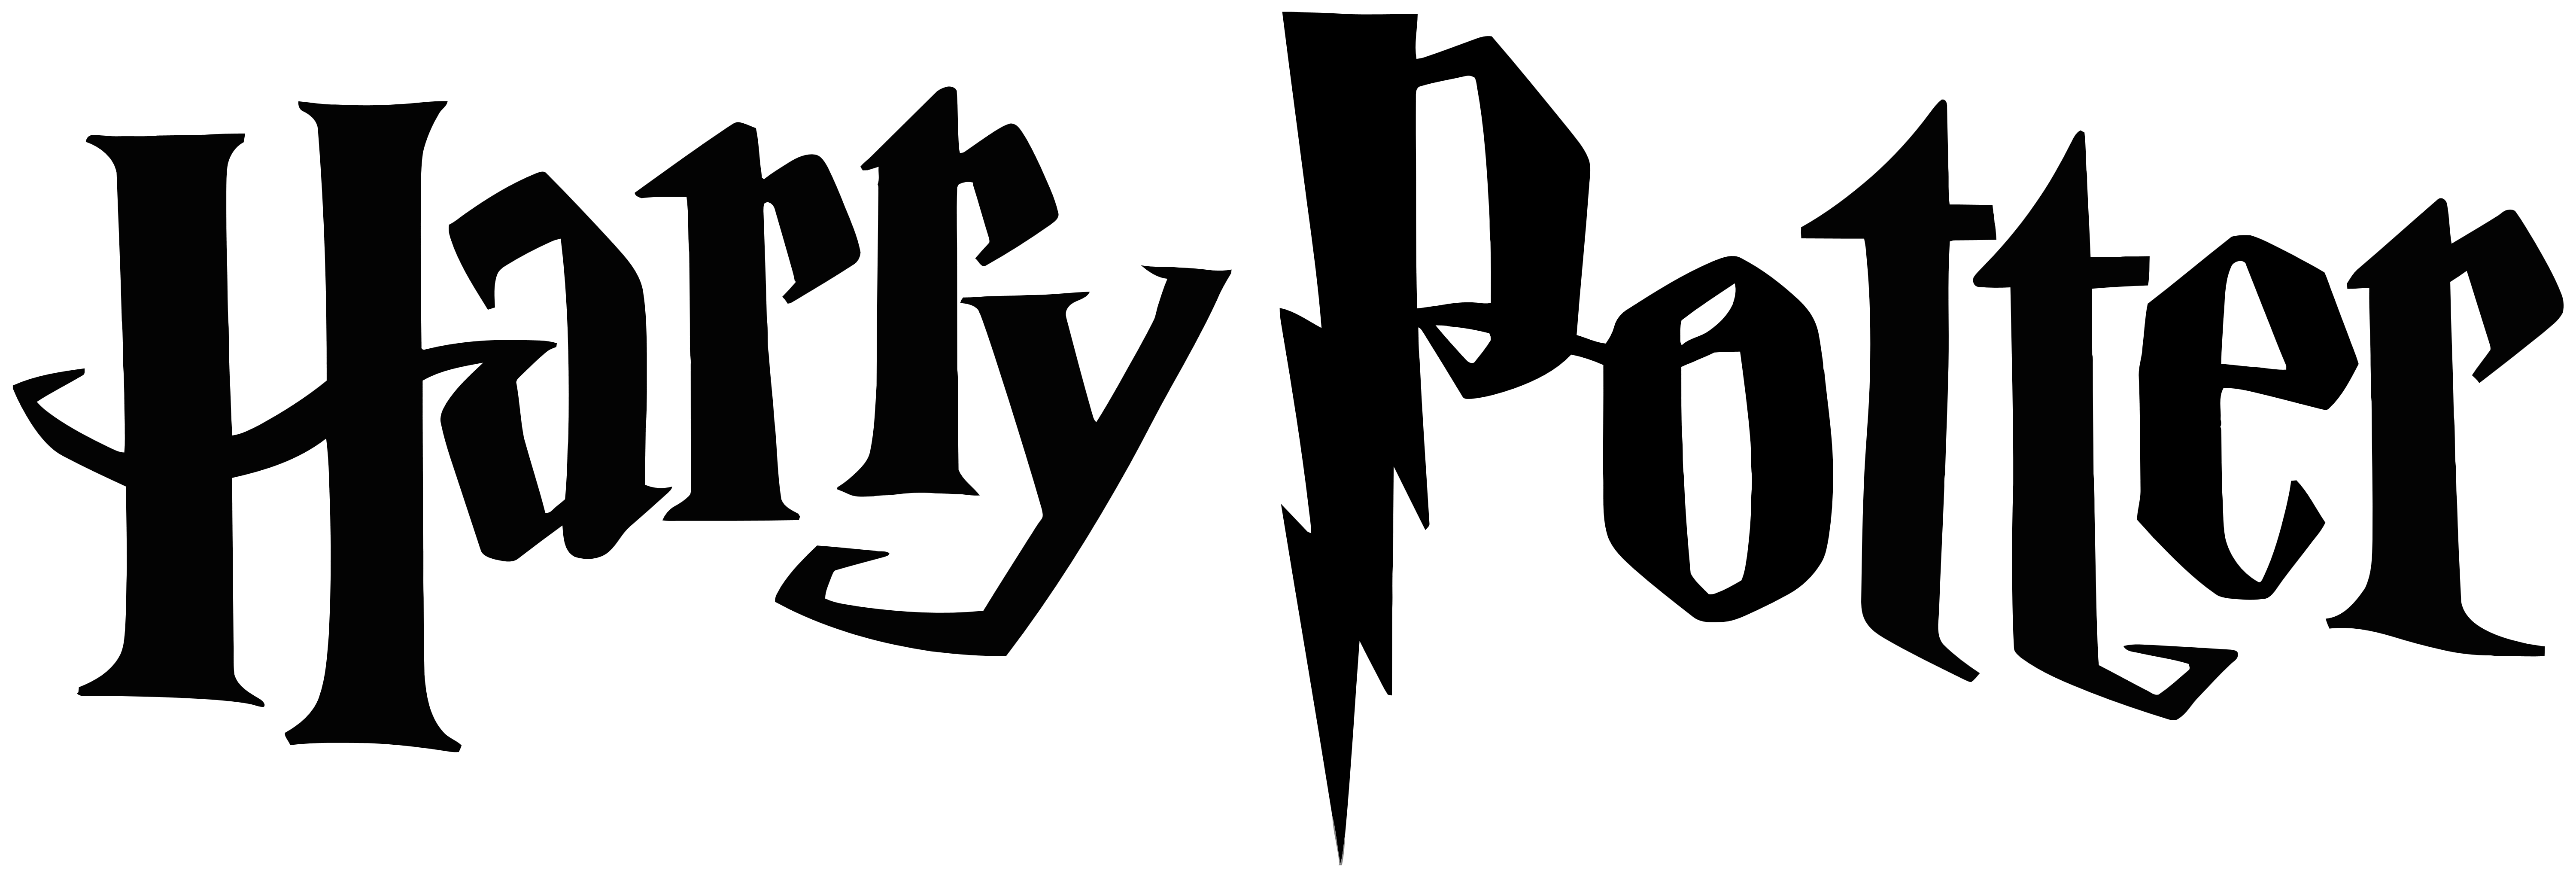 Potter Logo - Harry Potter – Logos Download